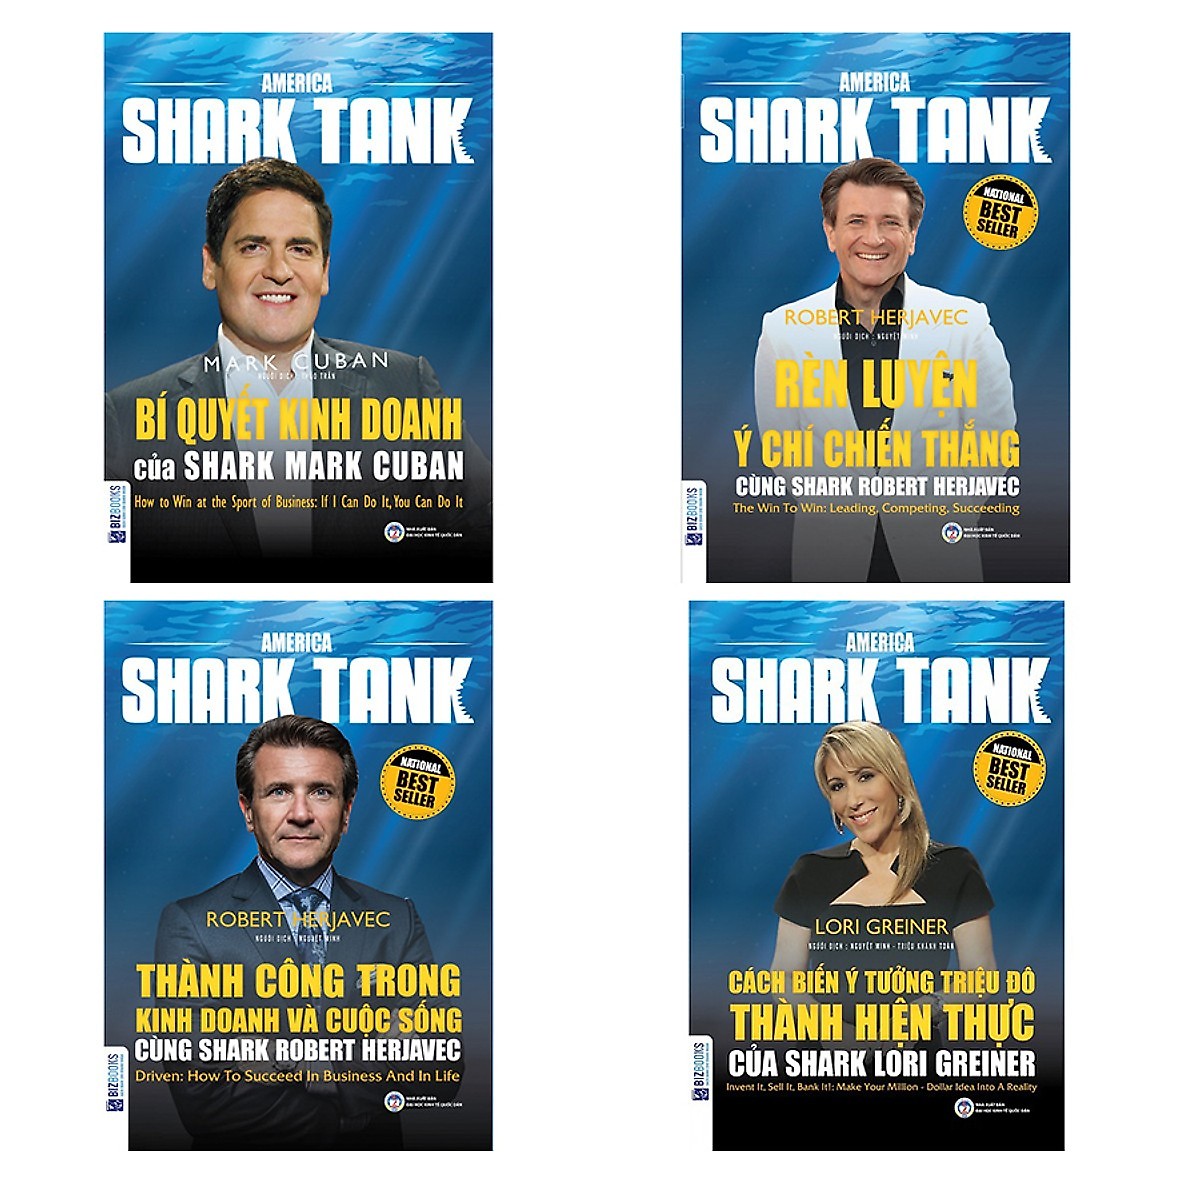 Combo 4 Cuốn Shark Tank (Bí Quyết Kinh Doanh + Rèn Luyện Ý Chí Chiến Thắng + Thành Công Trong Kinh Doanh Và Cuộc Sống + Cách Biến Ý Tưởng Triệu Đô Thành Hiện Thực) (Tặng kèm bút chì Kingbooks)